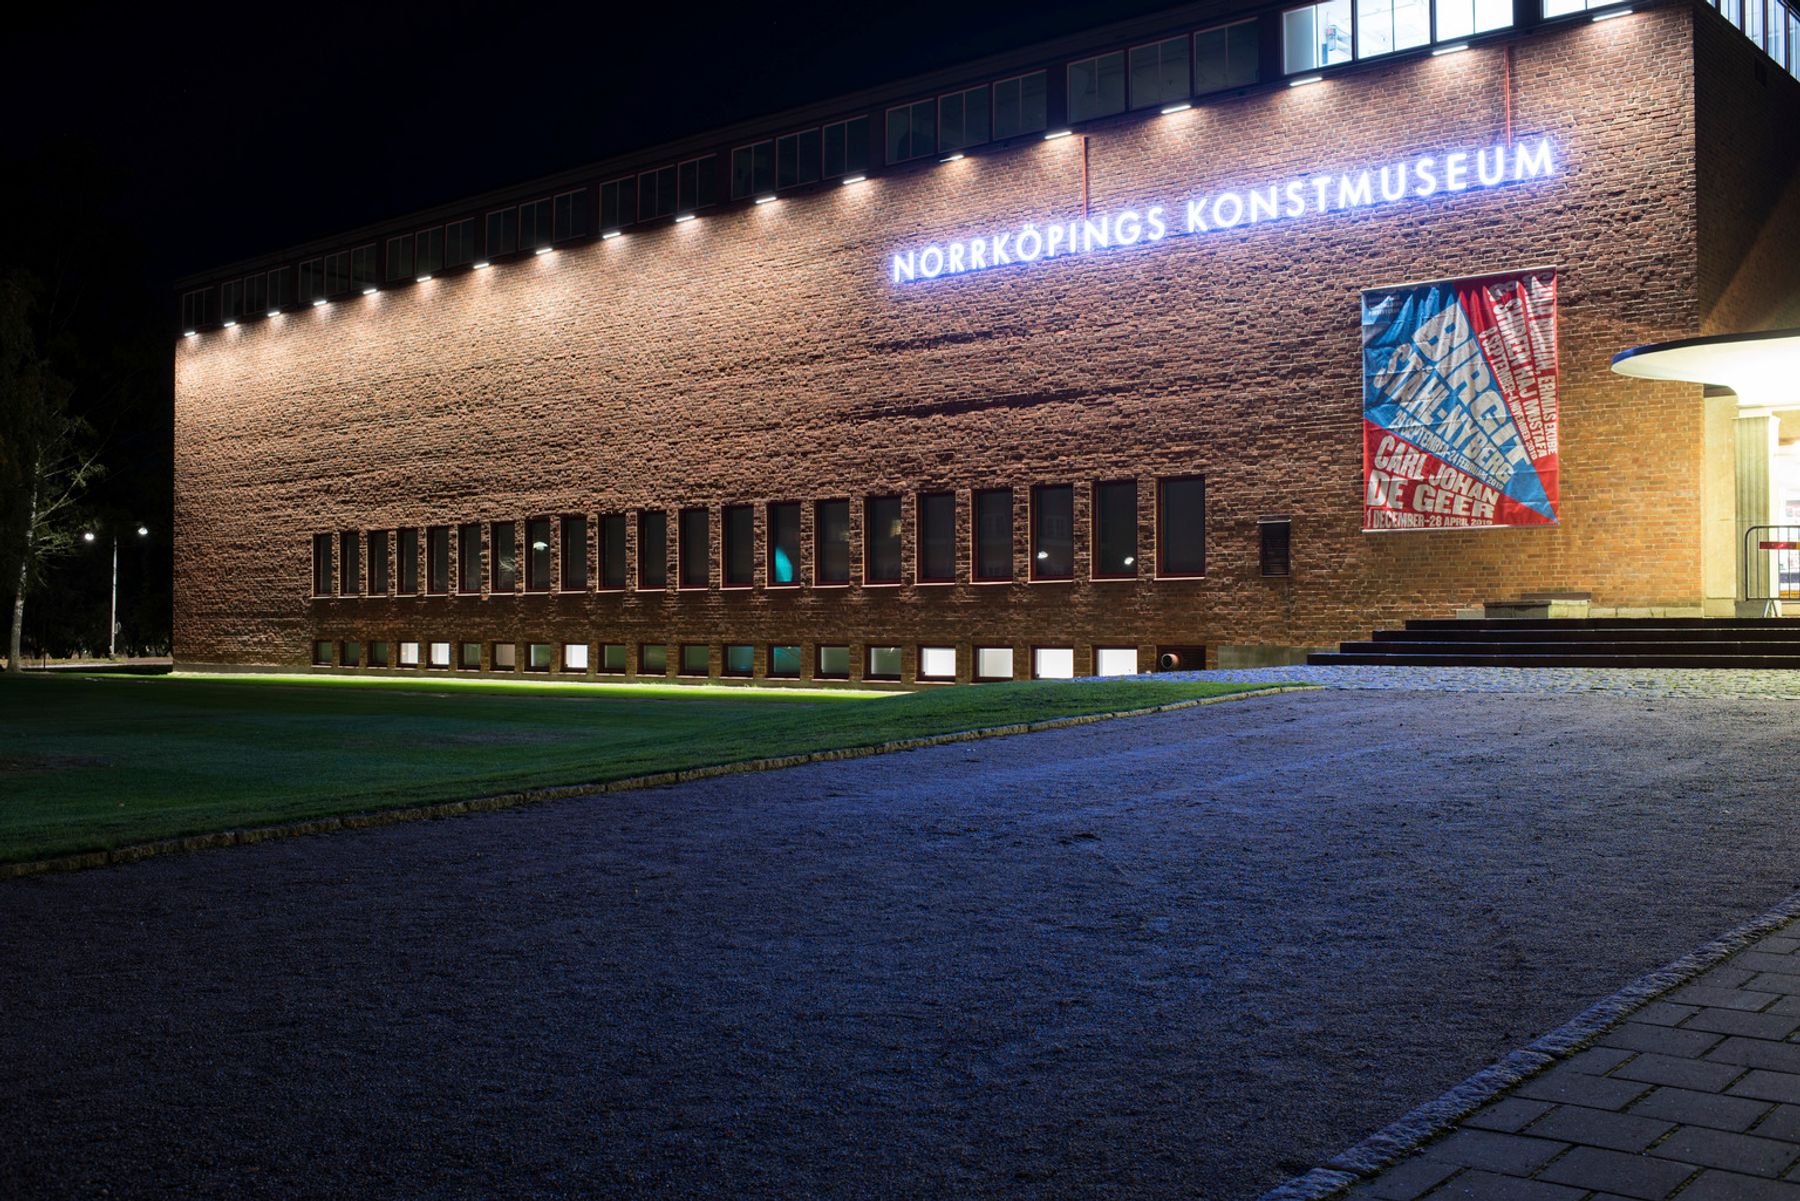 Norrköpings Konstmuseum, Norrköping. Lichtplanung: InWhite Ljusmiljö AB, Norrköping. Fotografie: Johan Elm, Stockholm.